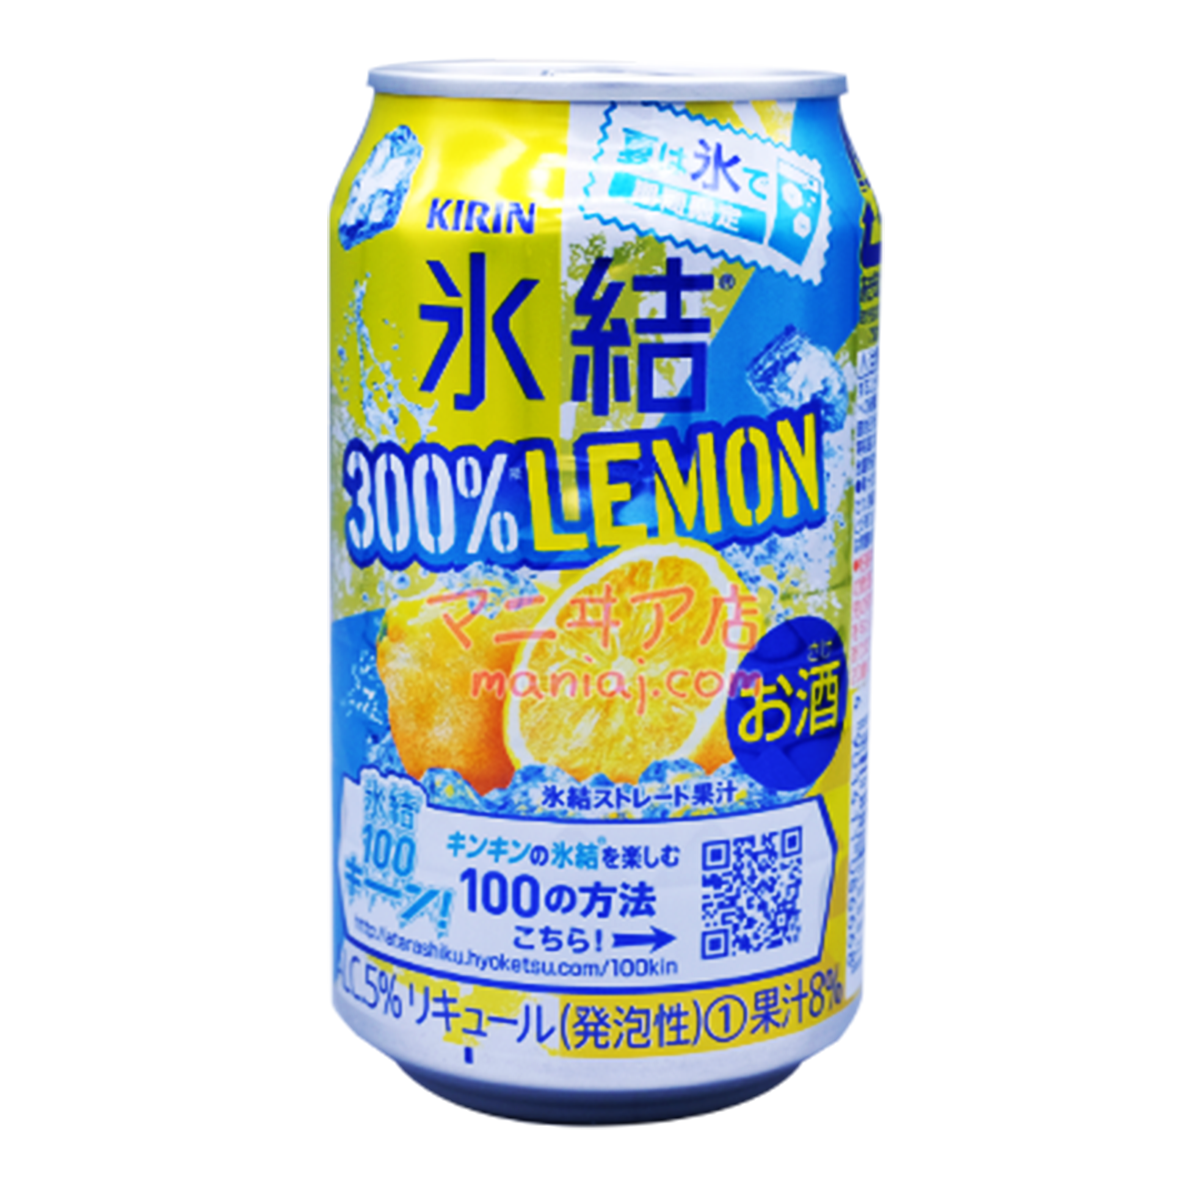 Freezing 300% Lemon